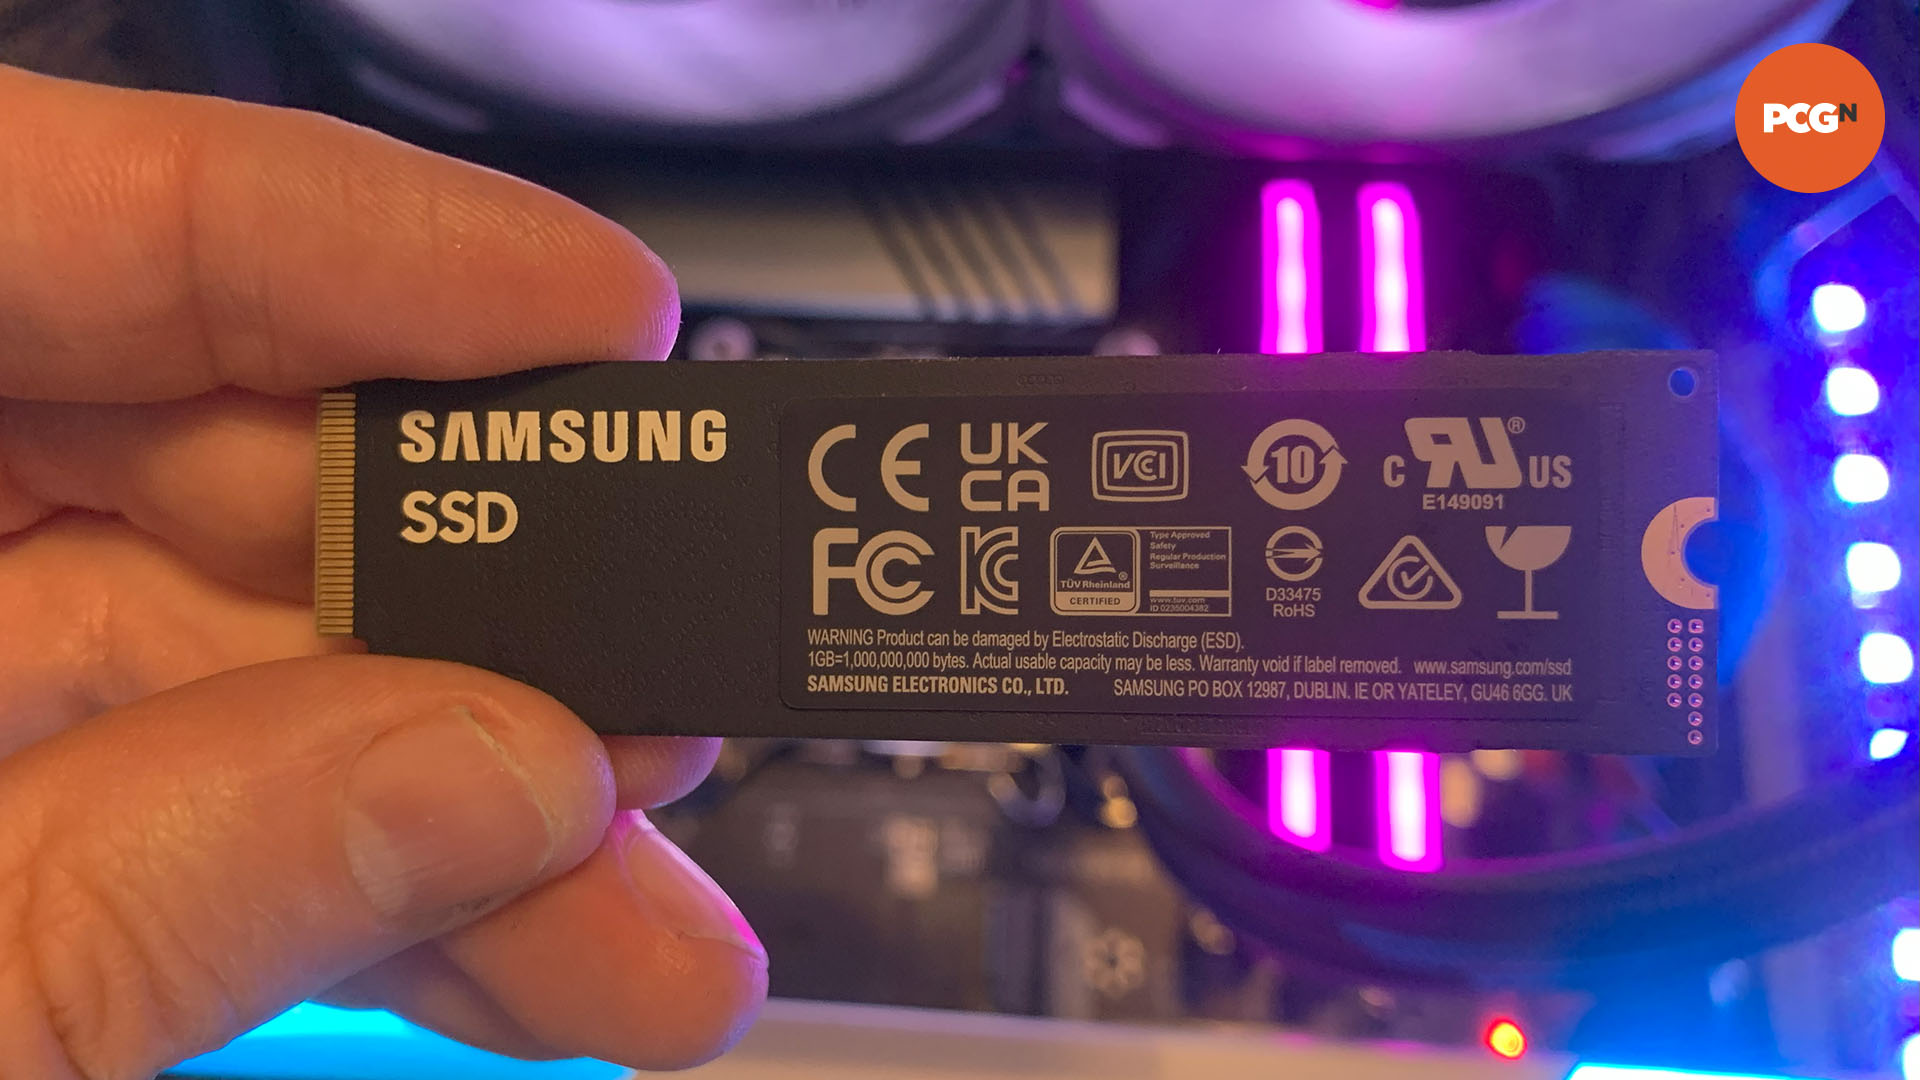 Revisión del Samsung 980 Pro: debajo del SSD